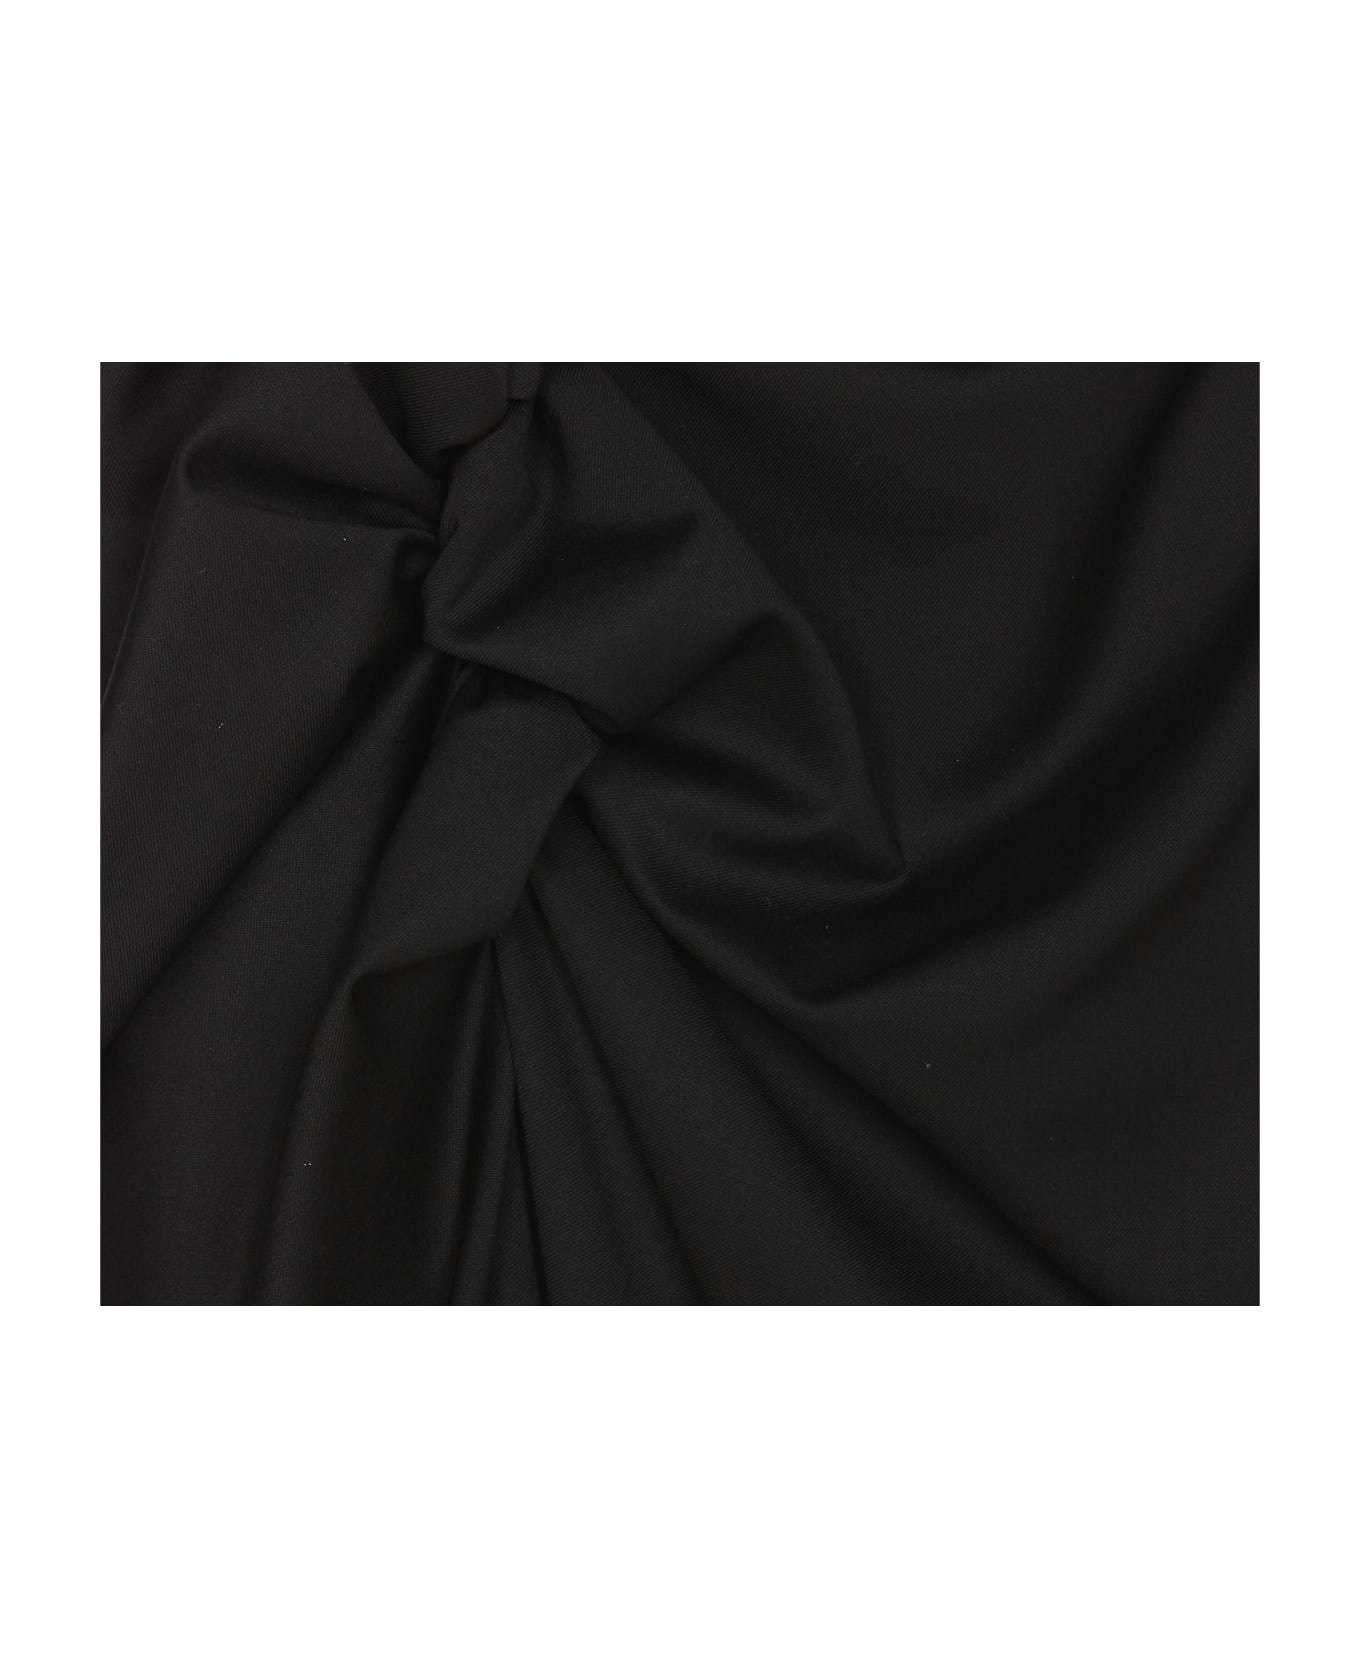 Vivienne Westwood Long Side Panther Skirt - Black